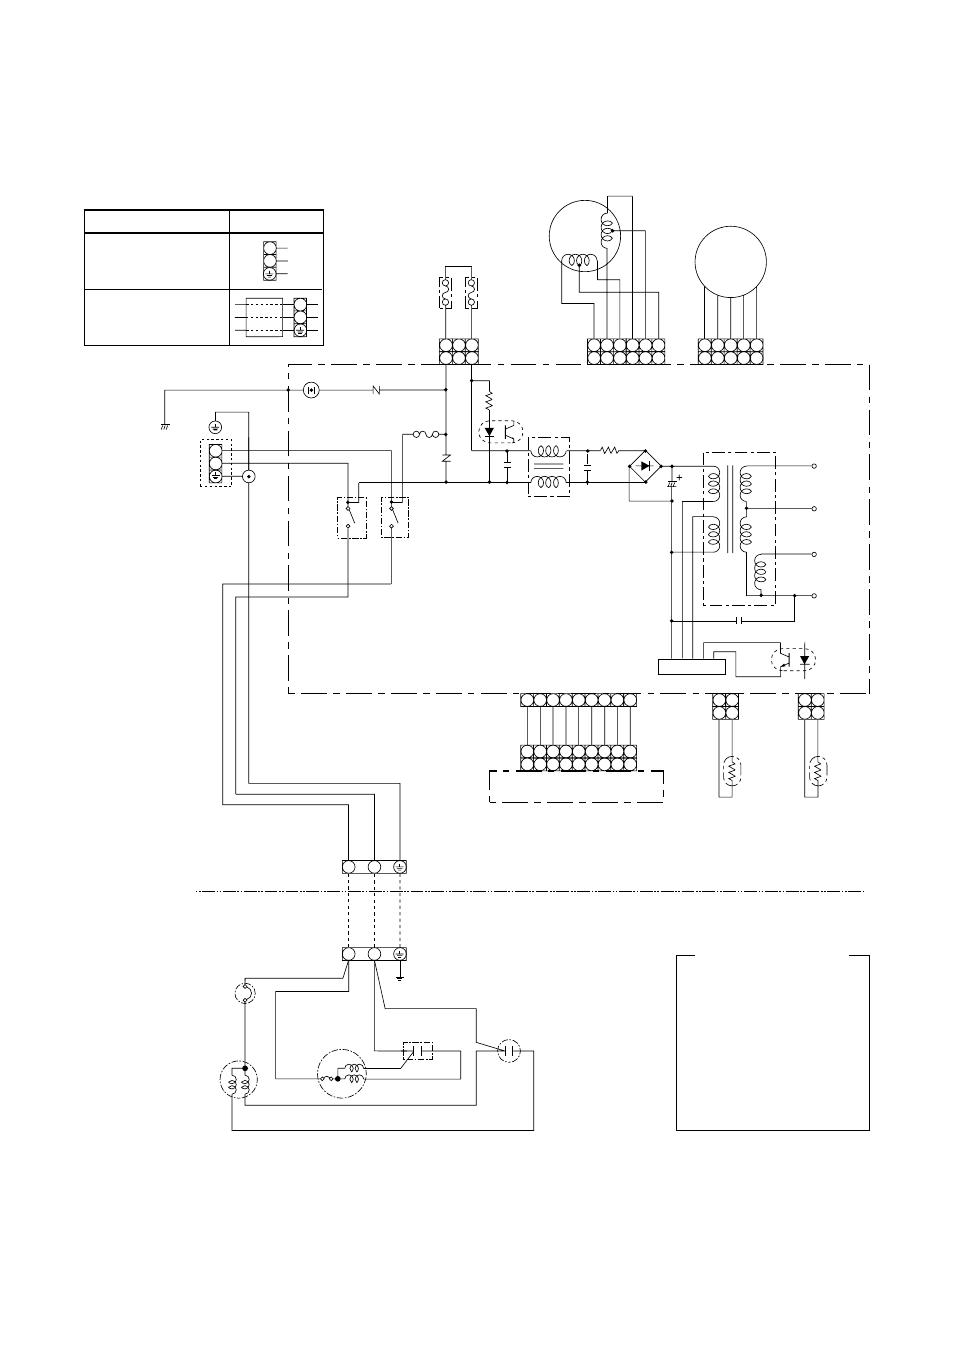 Wiring Diagram  Main P C  Board Mcc